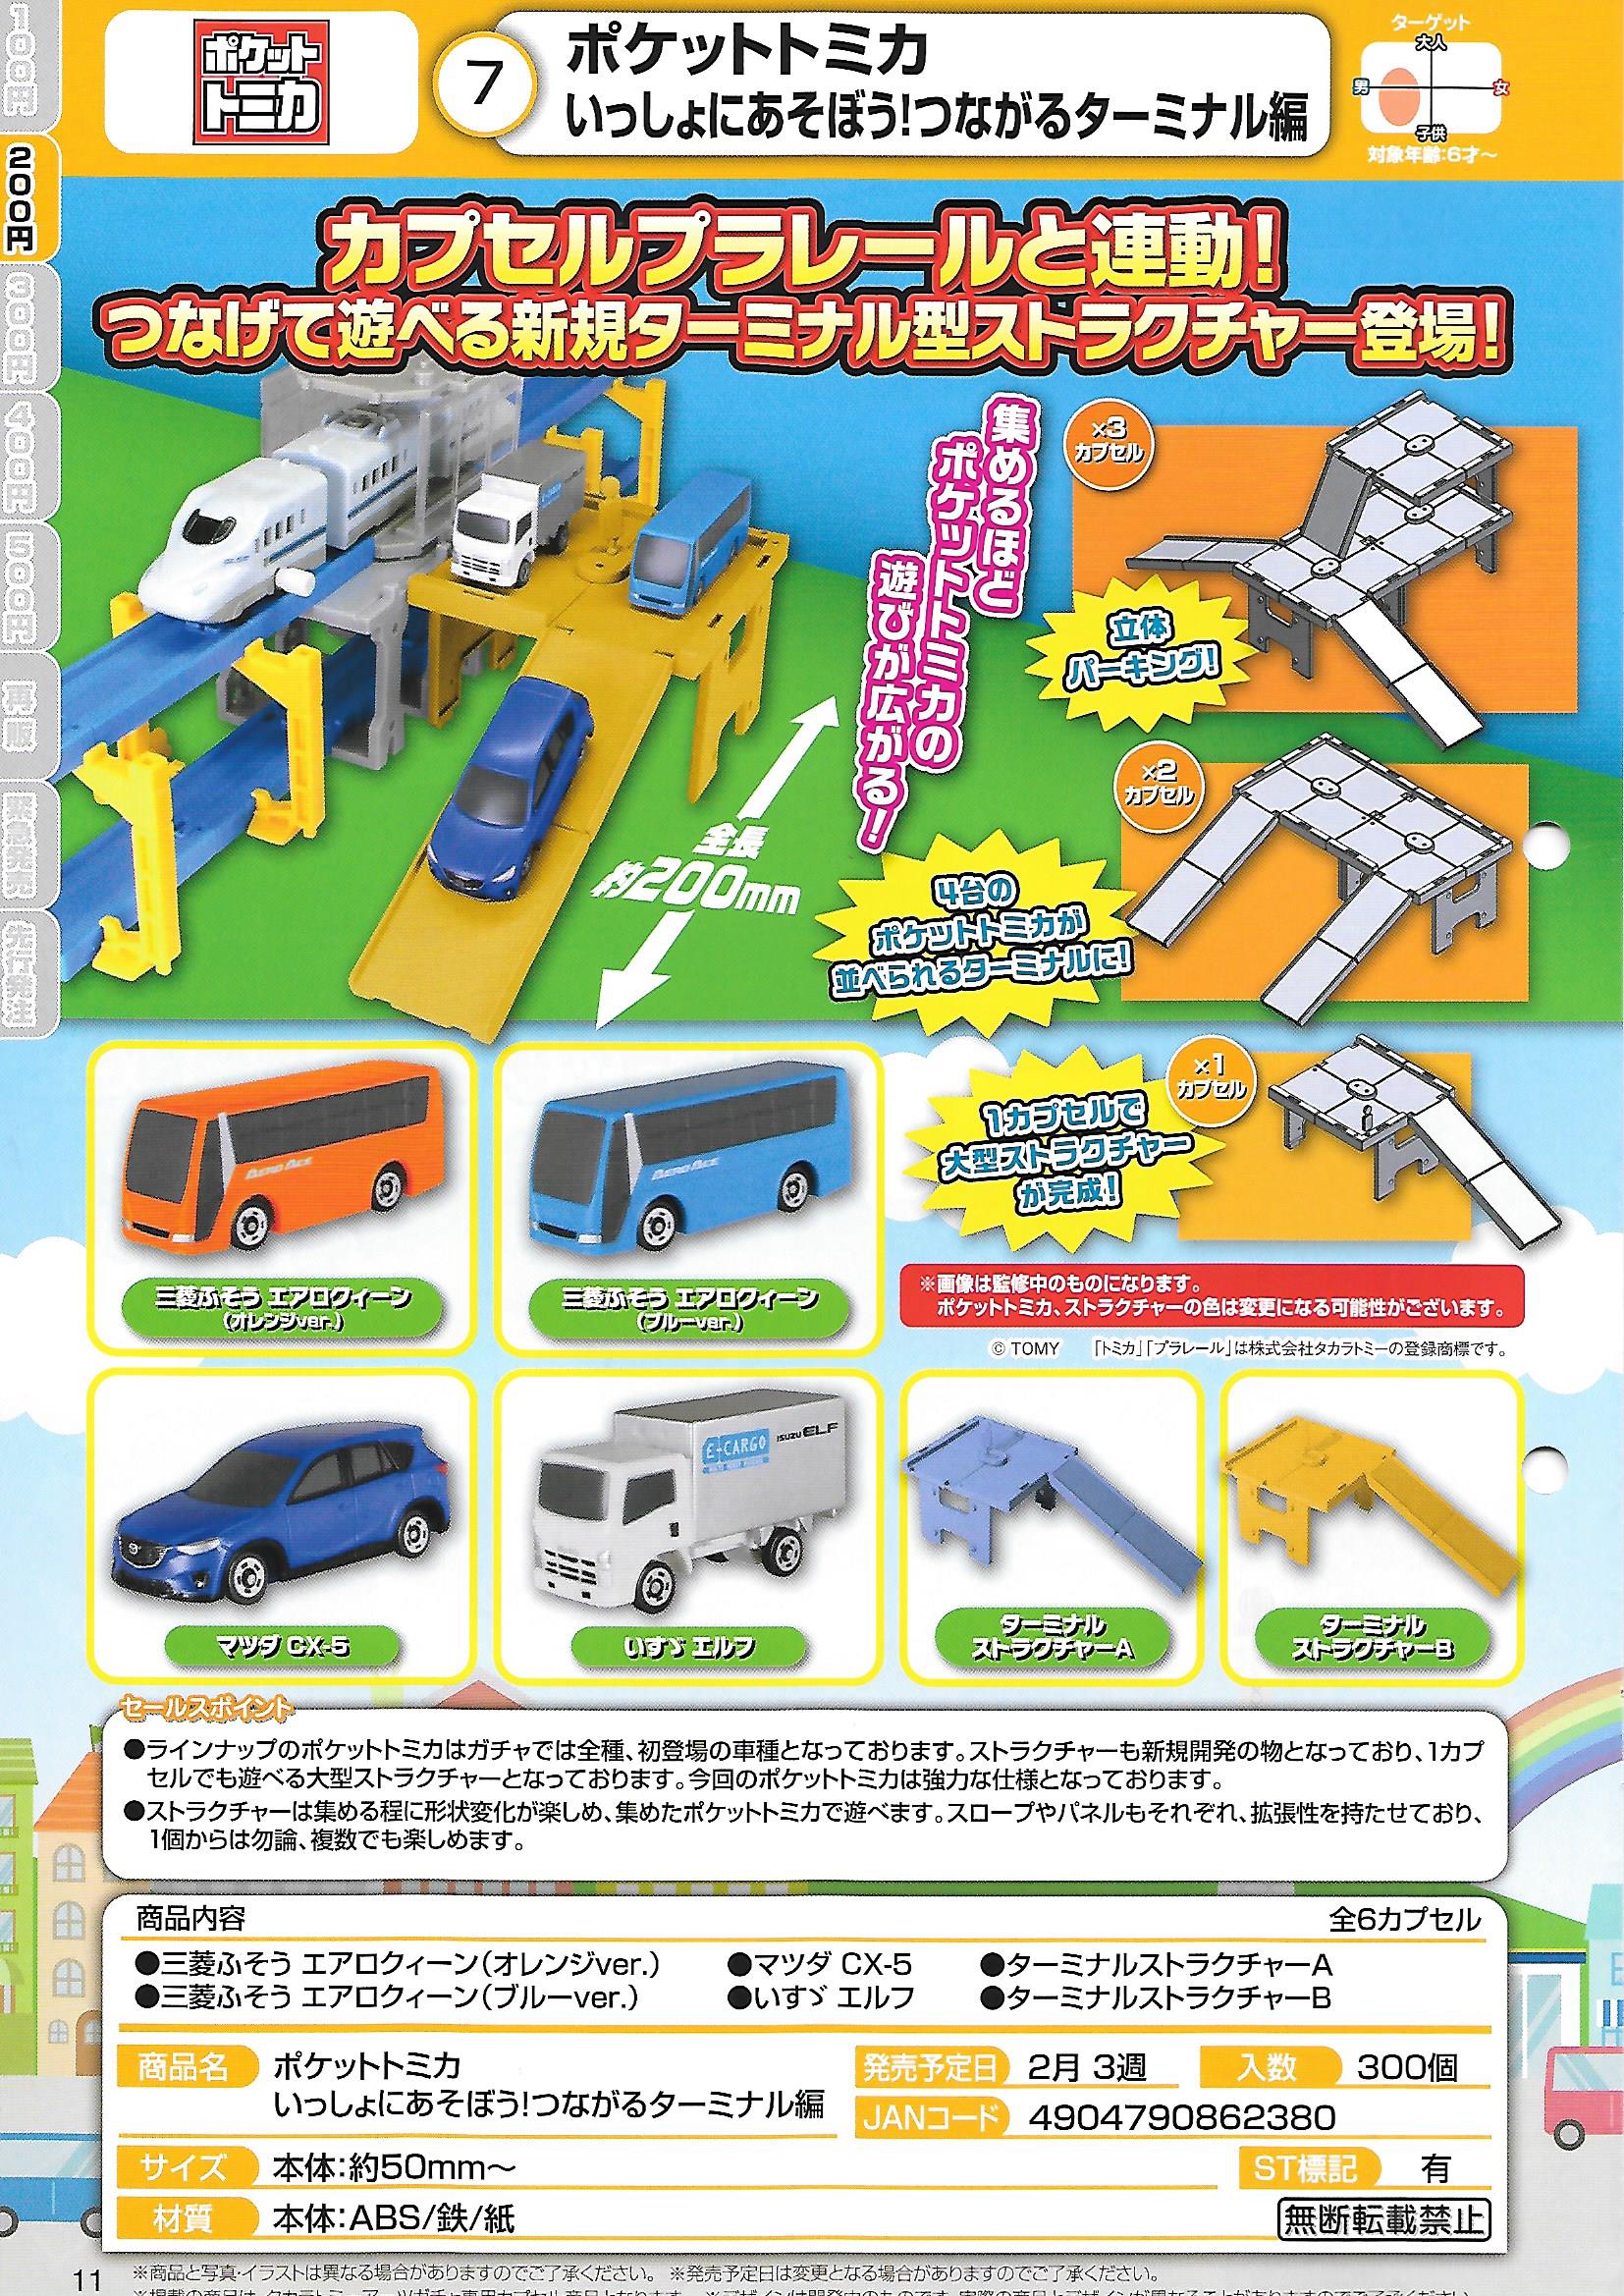 200日元扭蛋 Pocket Tomy Car 一起来玩吧!可链接式站点篇 全6种 862380